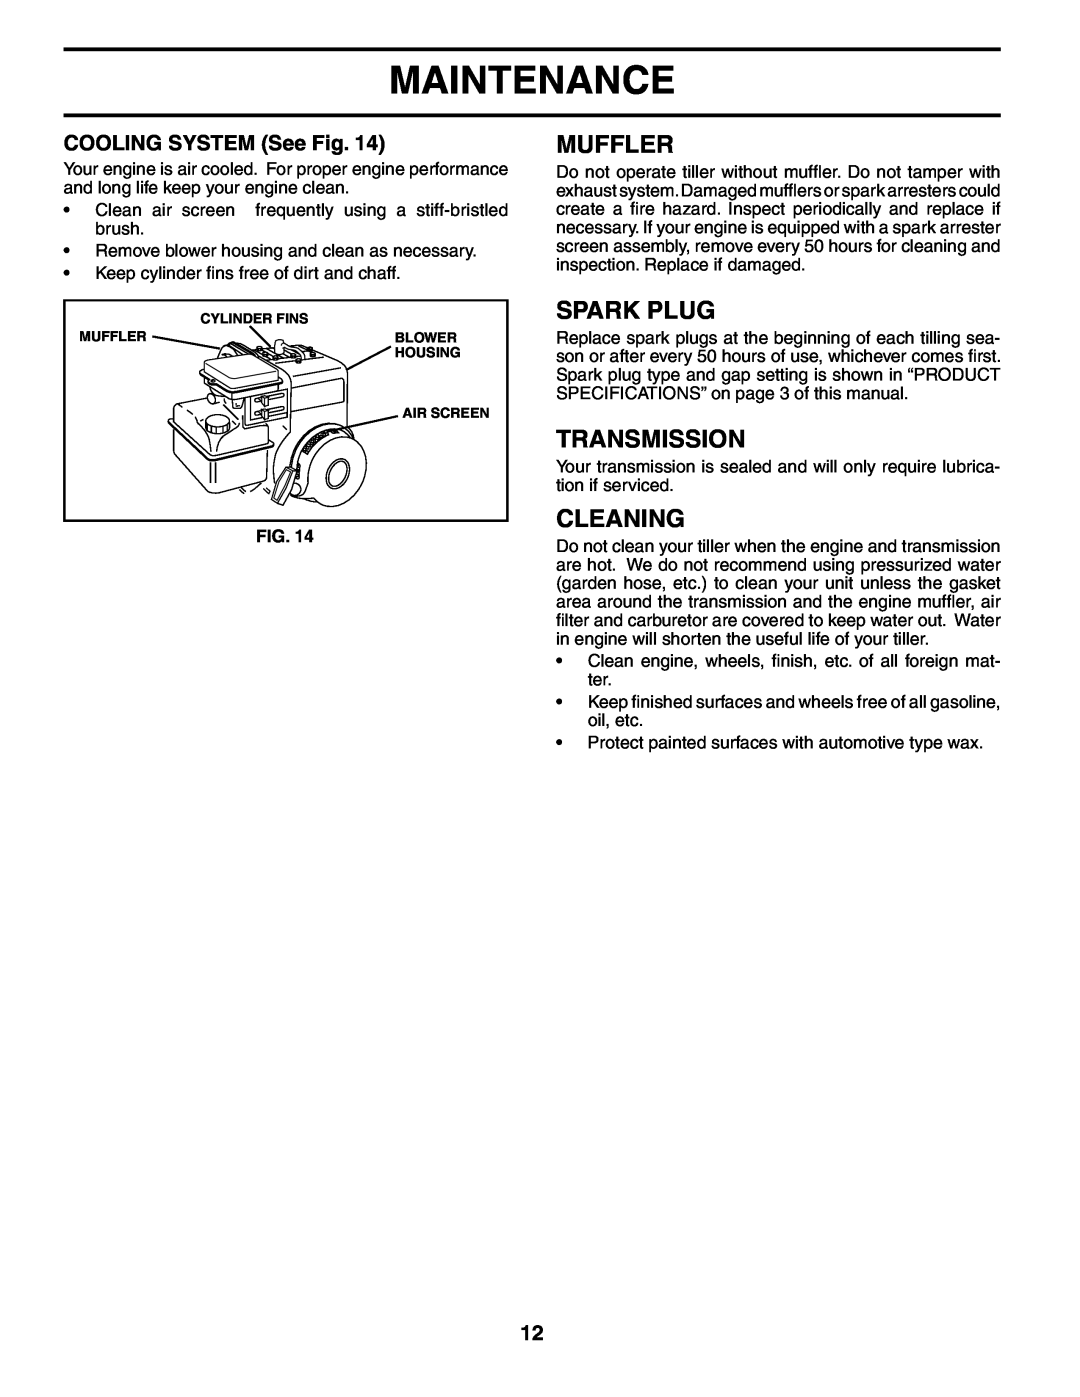 Electrolux FN620K owner manual Muffler, Spark Plug, Transmission, Cleaning, COOLING SYSTEM See Fig, Maintenance 